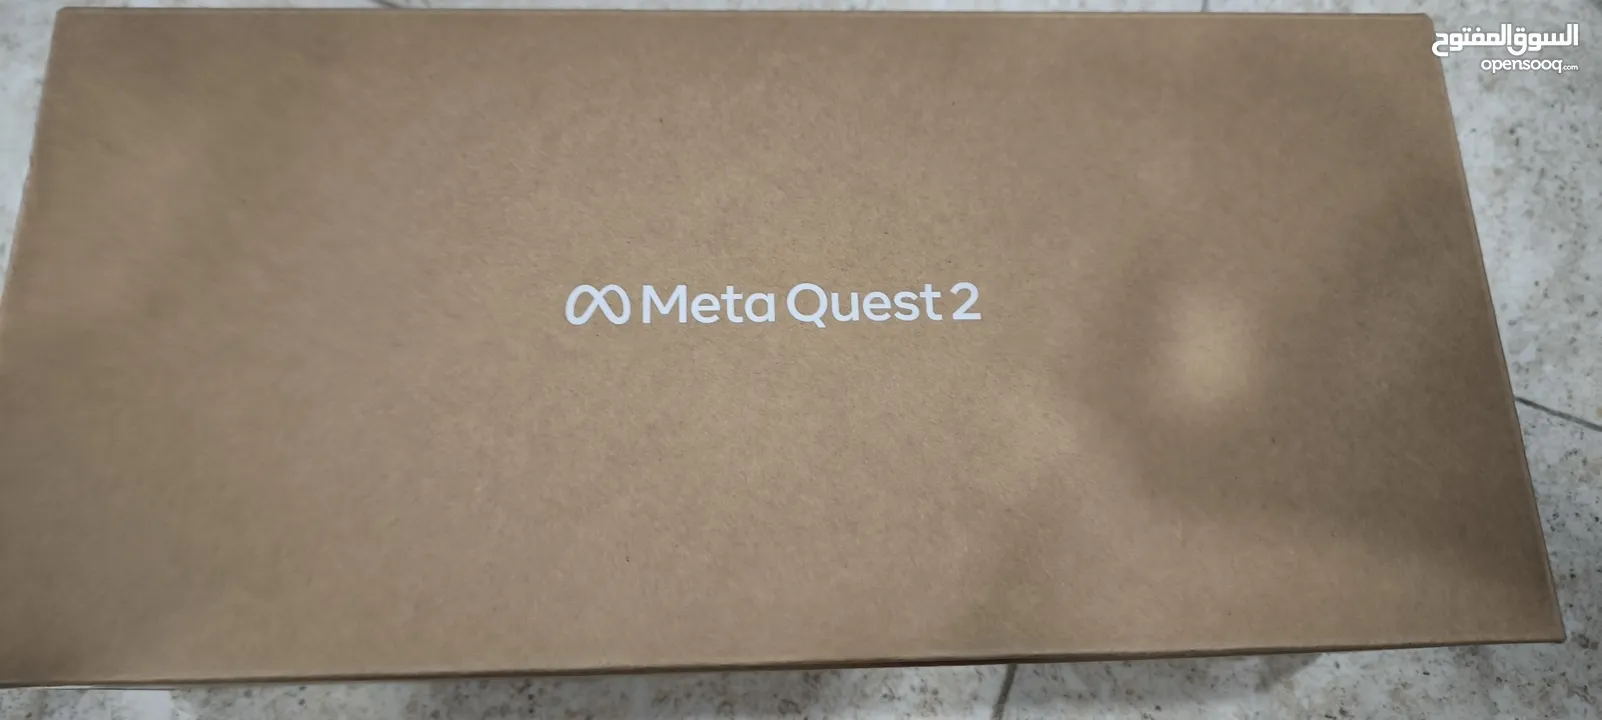 ميتا كويست 2 اوكيلس كويست 2 meta oculus quest 2 جديدة بسعر رخيص